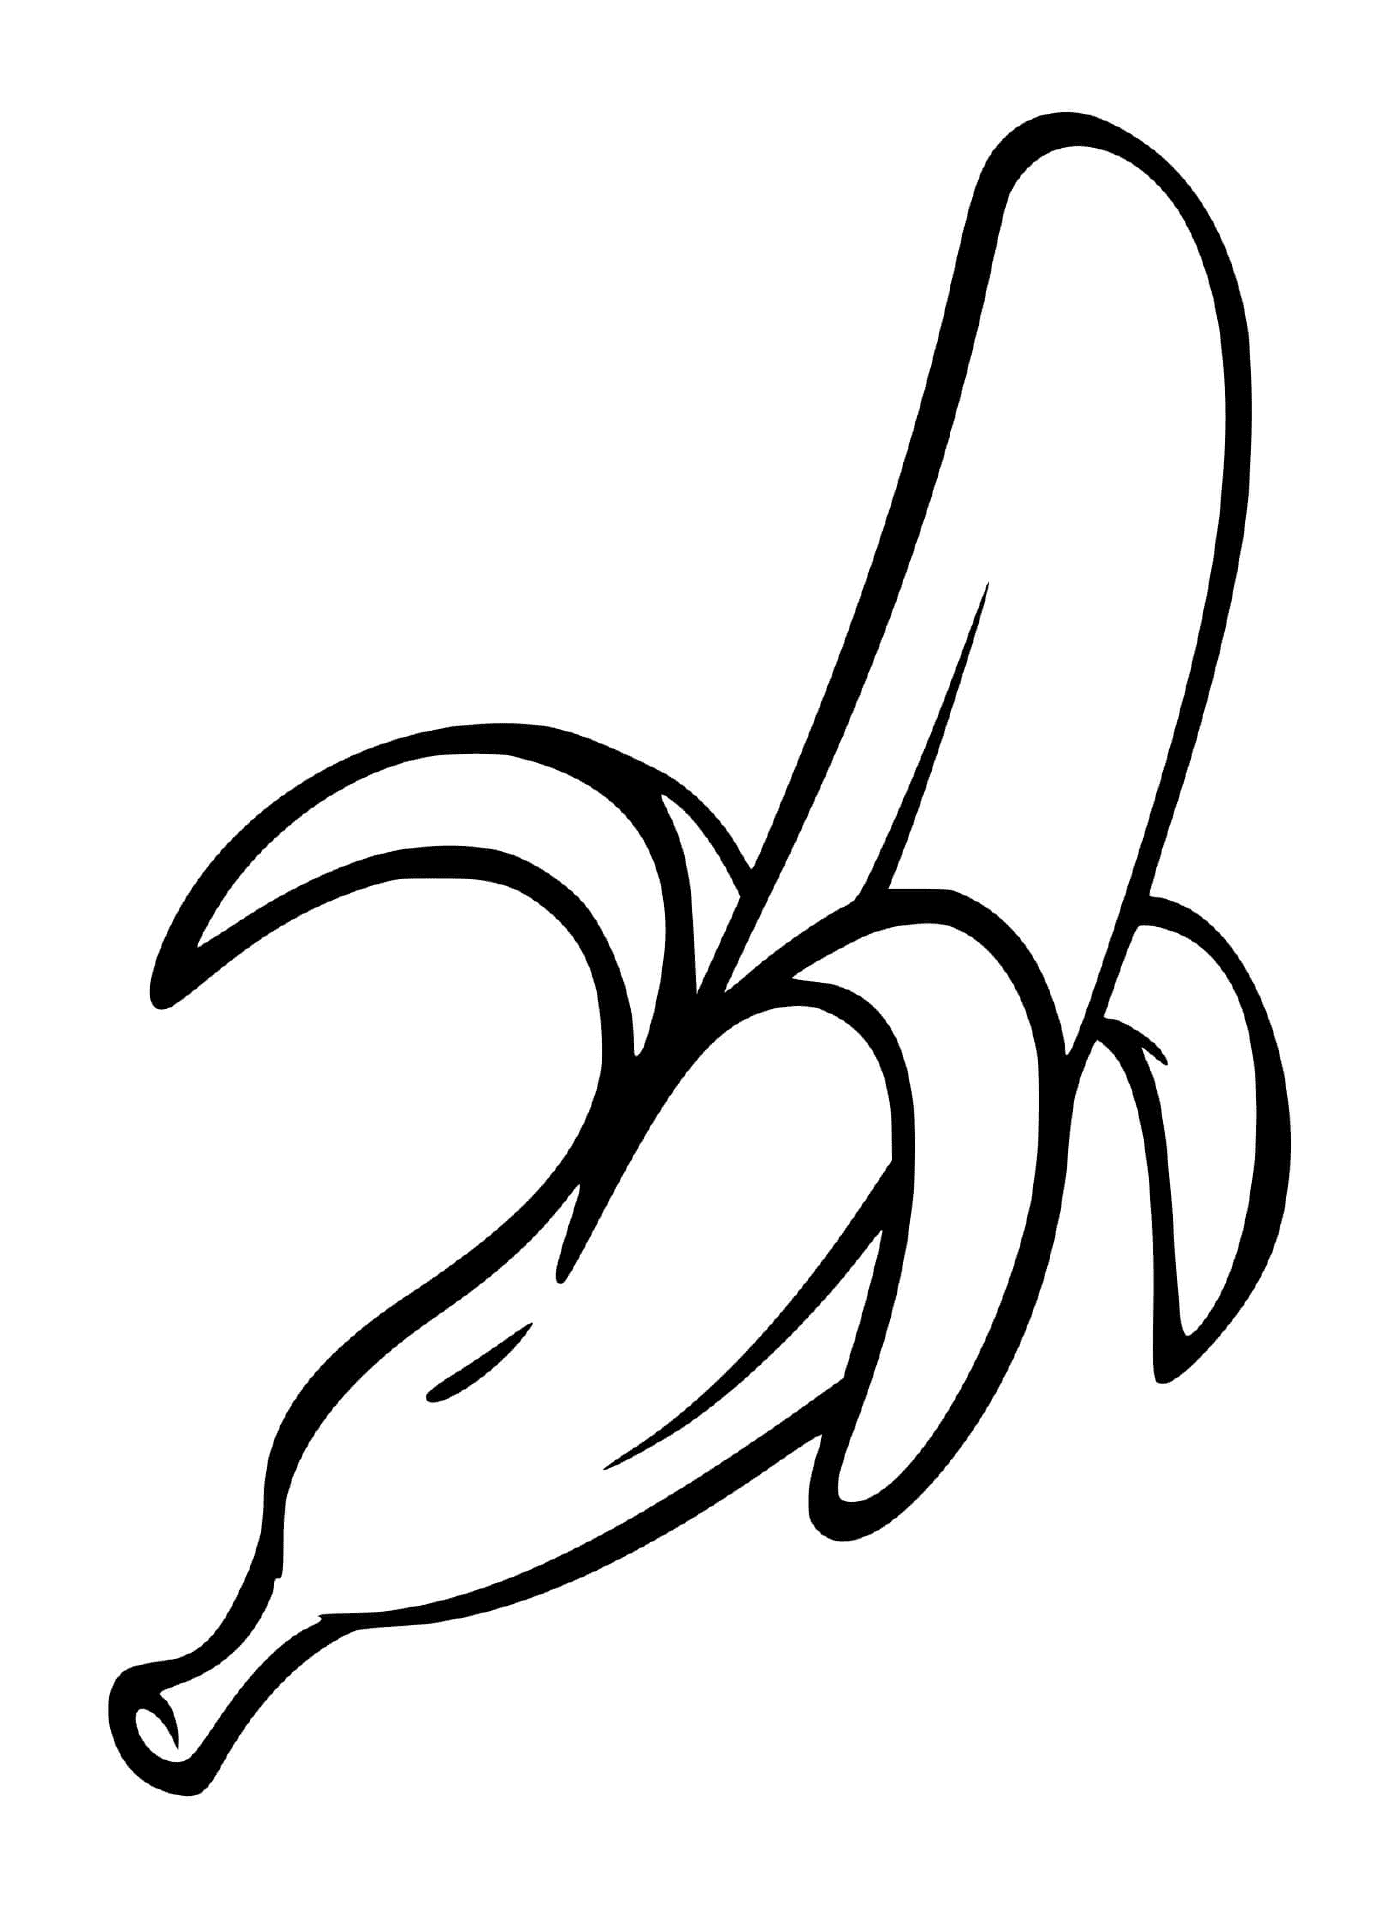   Une banane pelée 